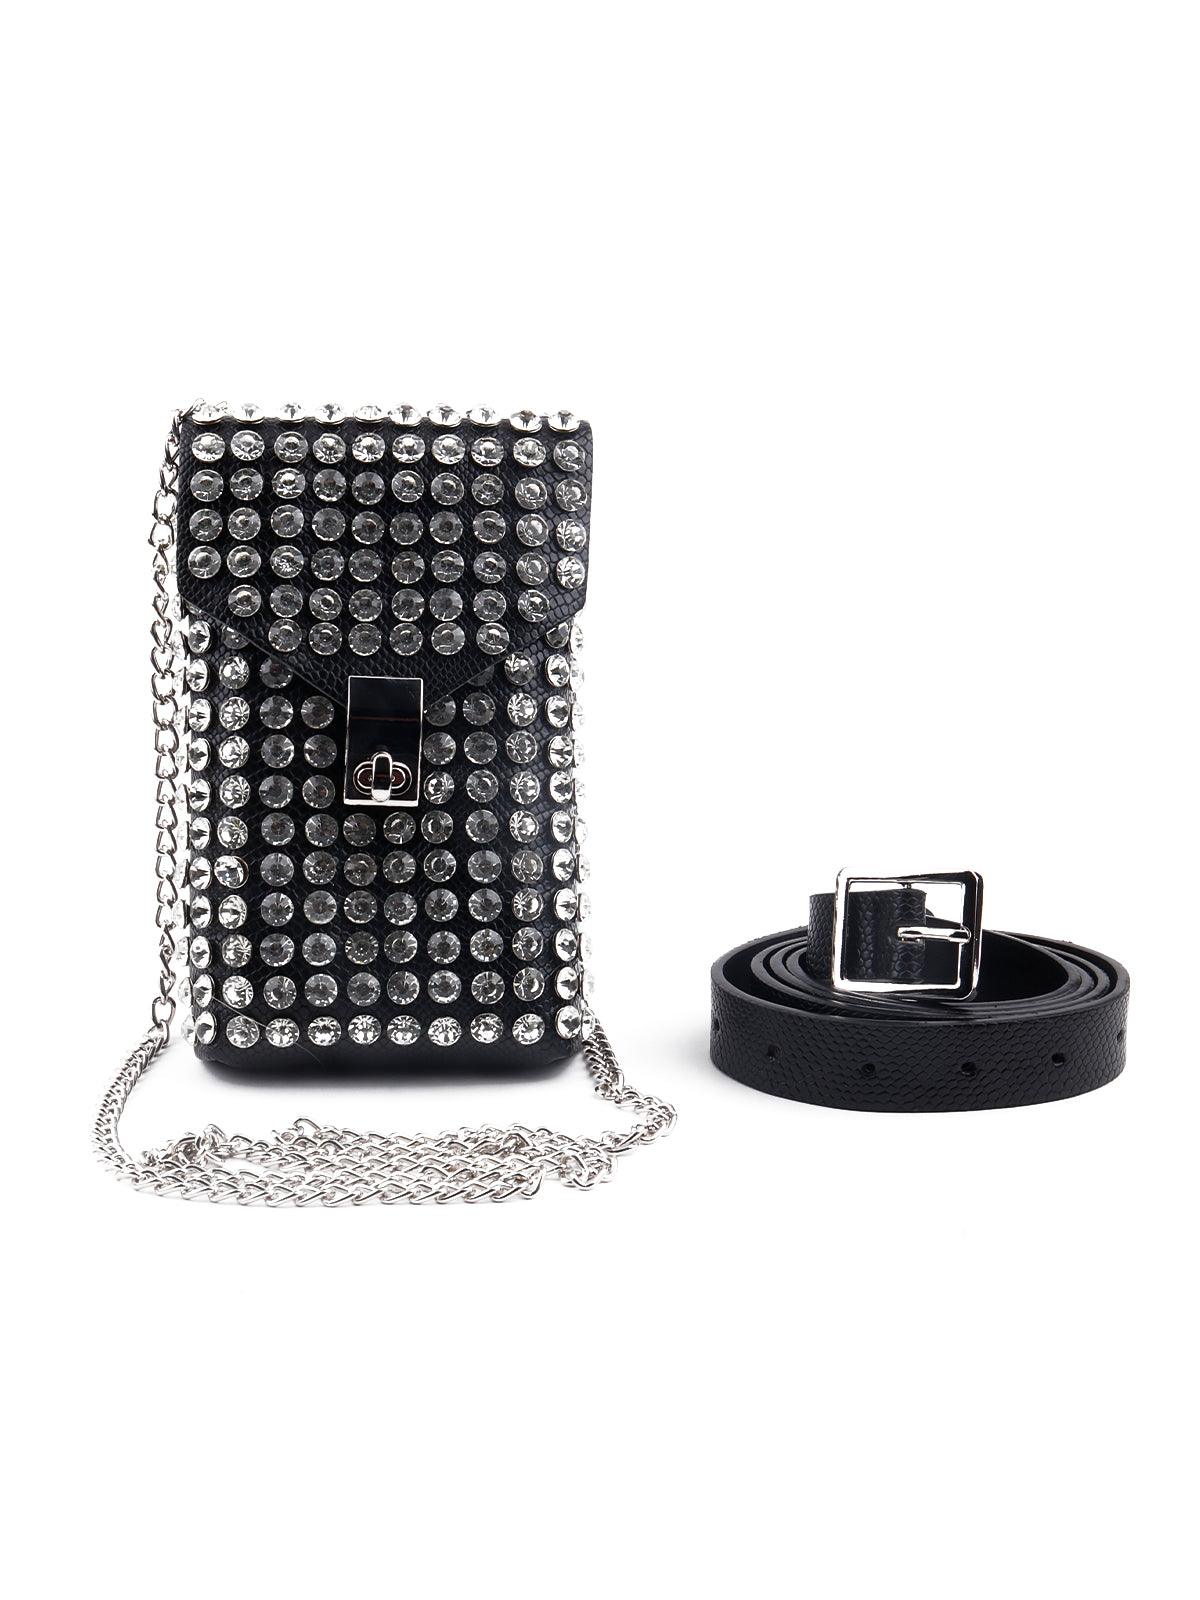 Gorgeous black studded belt bag for women - Odette